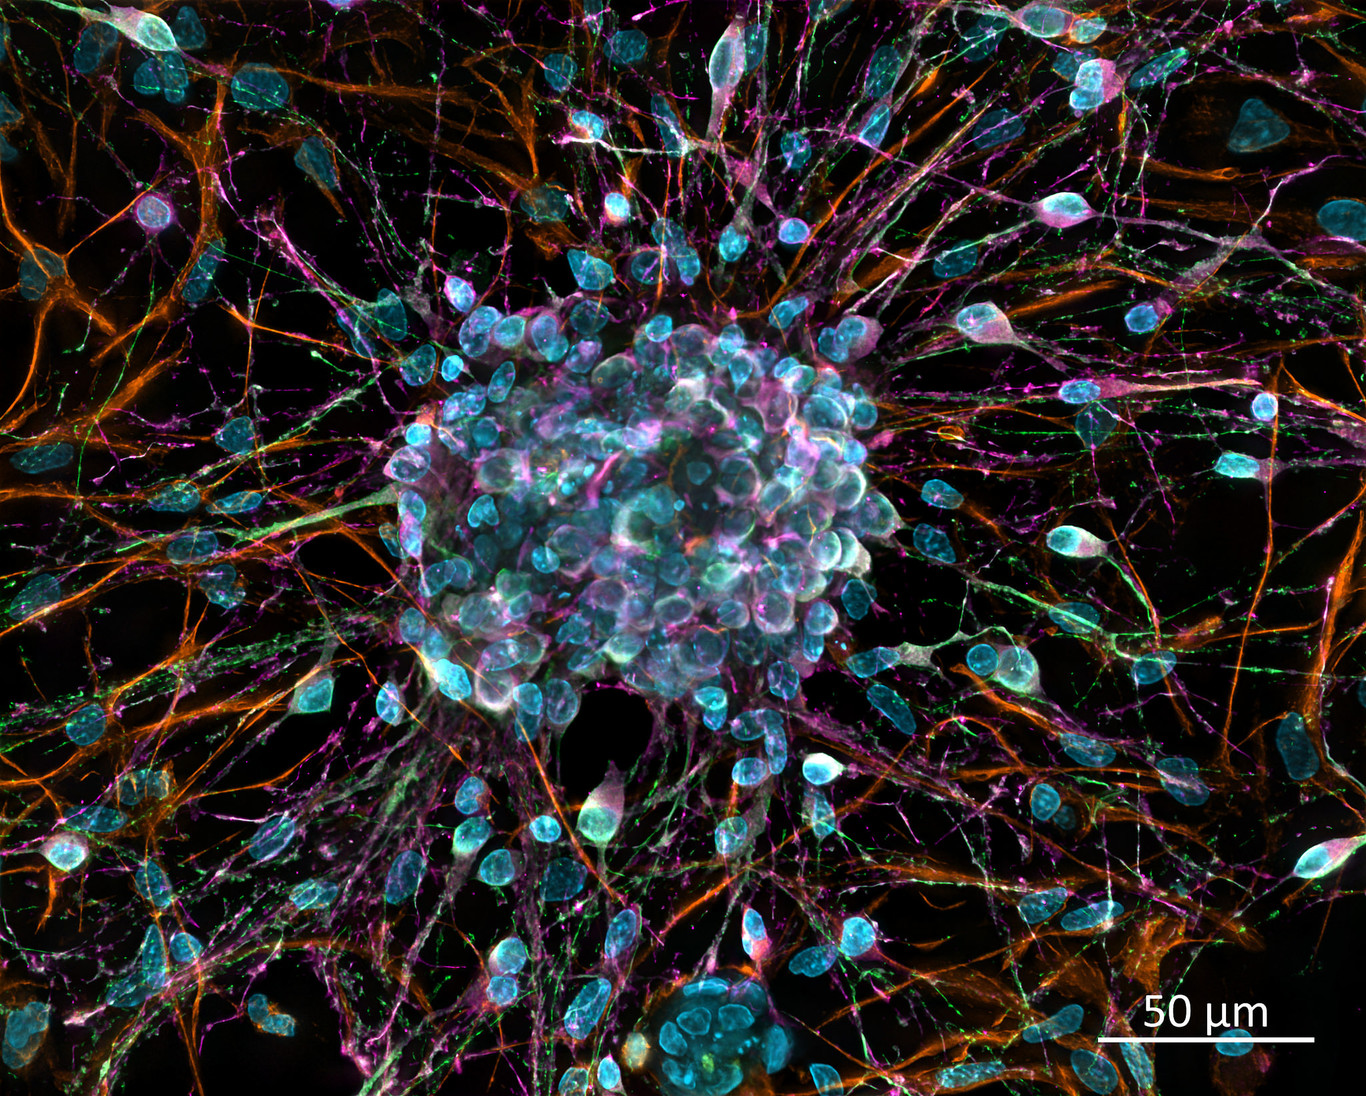 Hallan un nuevo tipo de neurona en el cerebro humano